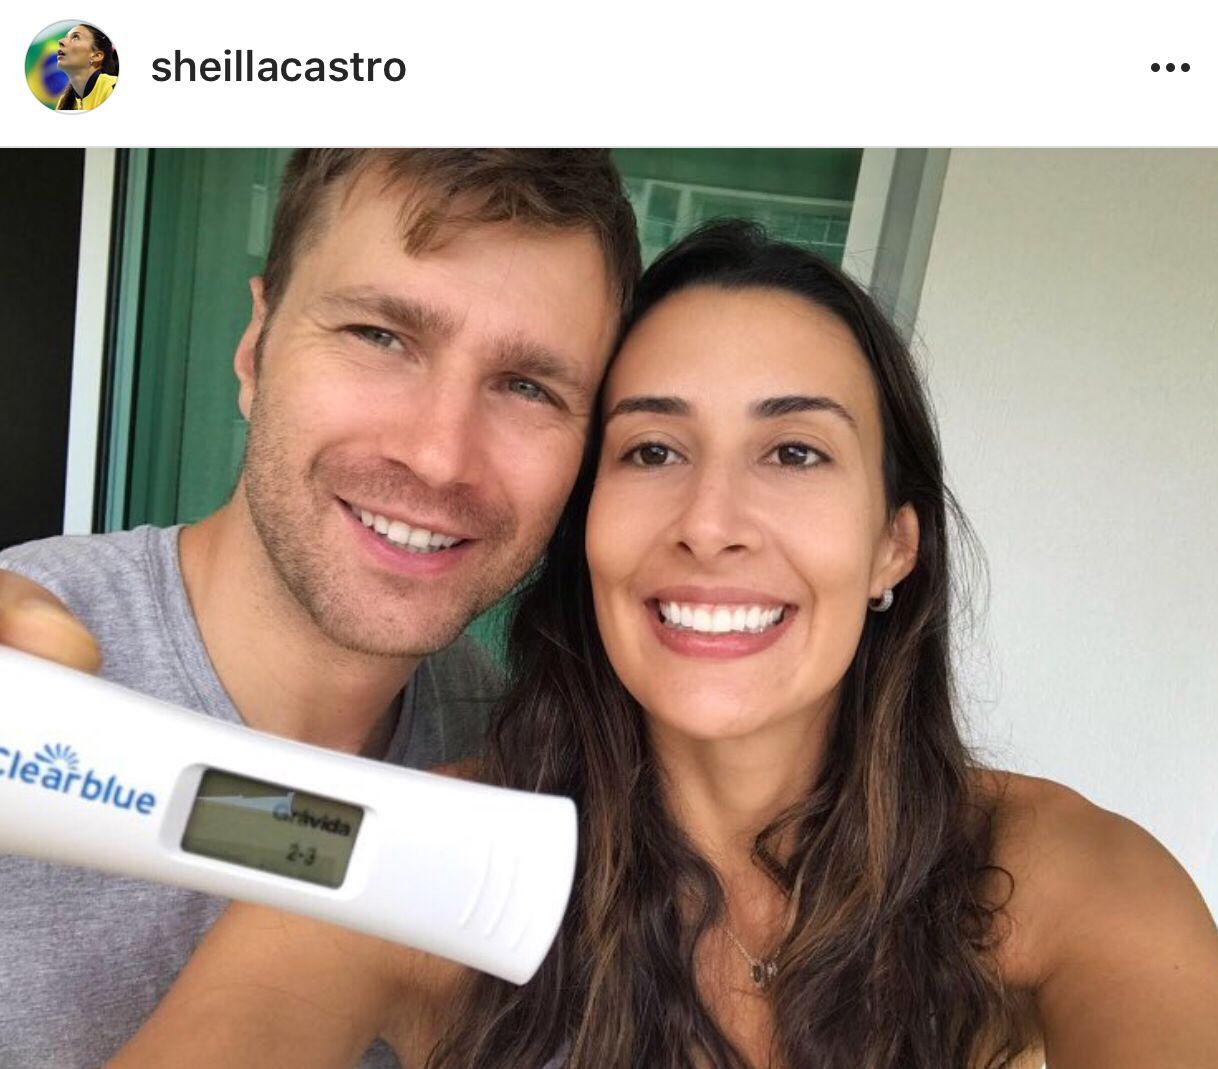 5月1日,巴西排球天后谢拉-卡斯特罗在社交平台晒出与老公举着验孕棒的